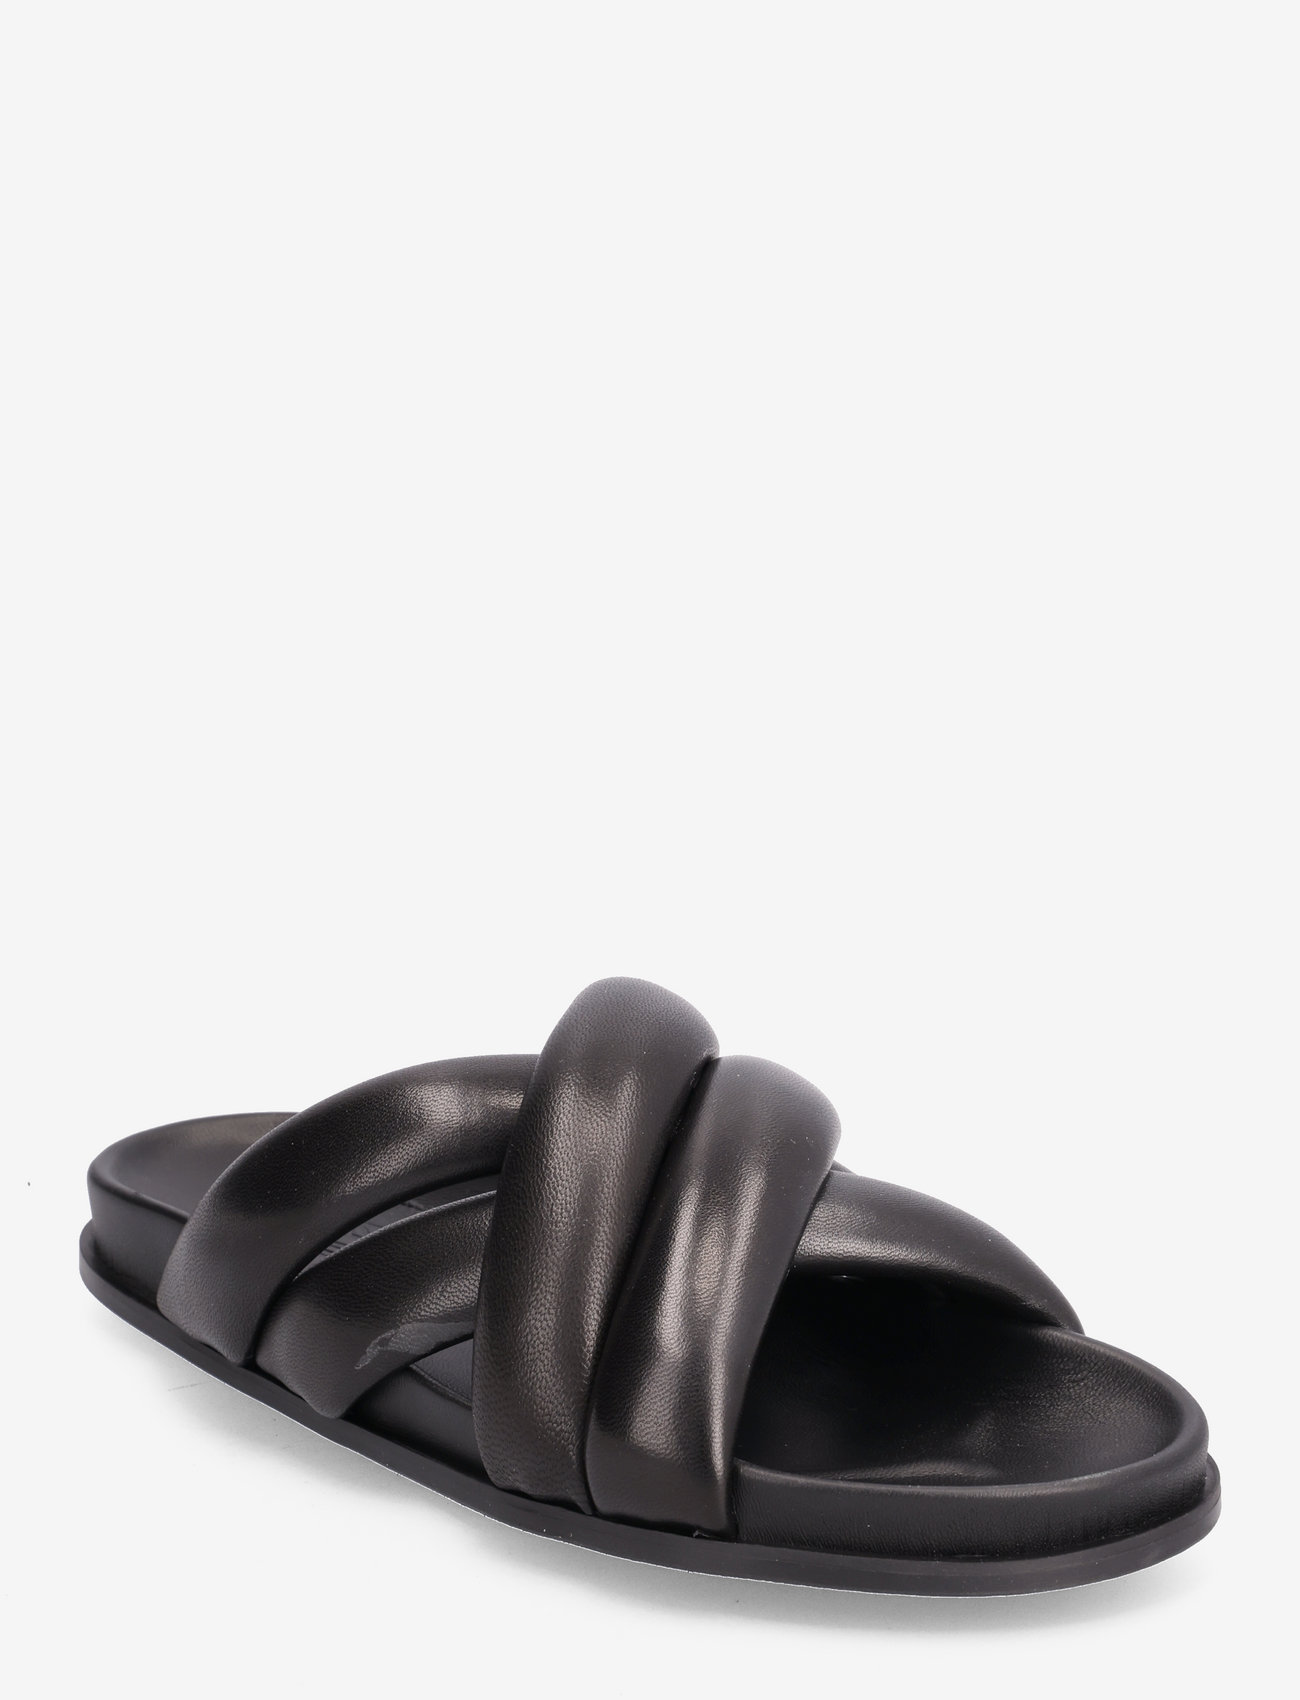 Billi Bi - C5254 - flat sandals - black nappa 70 - 0